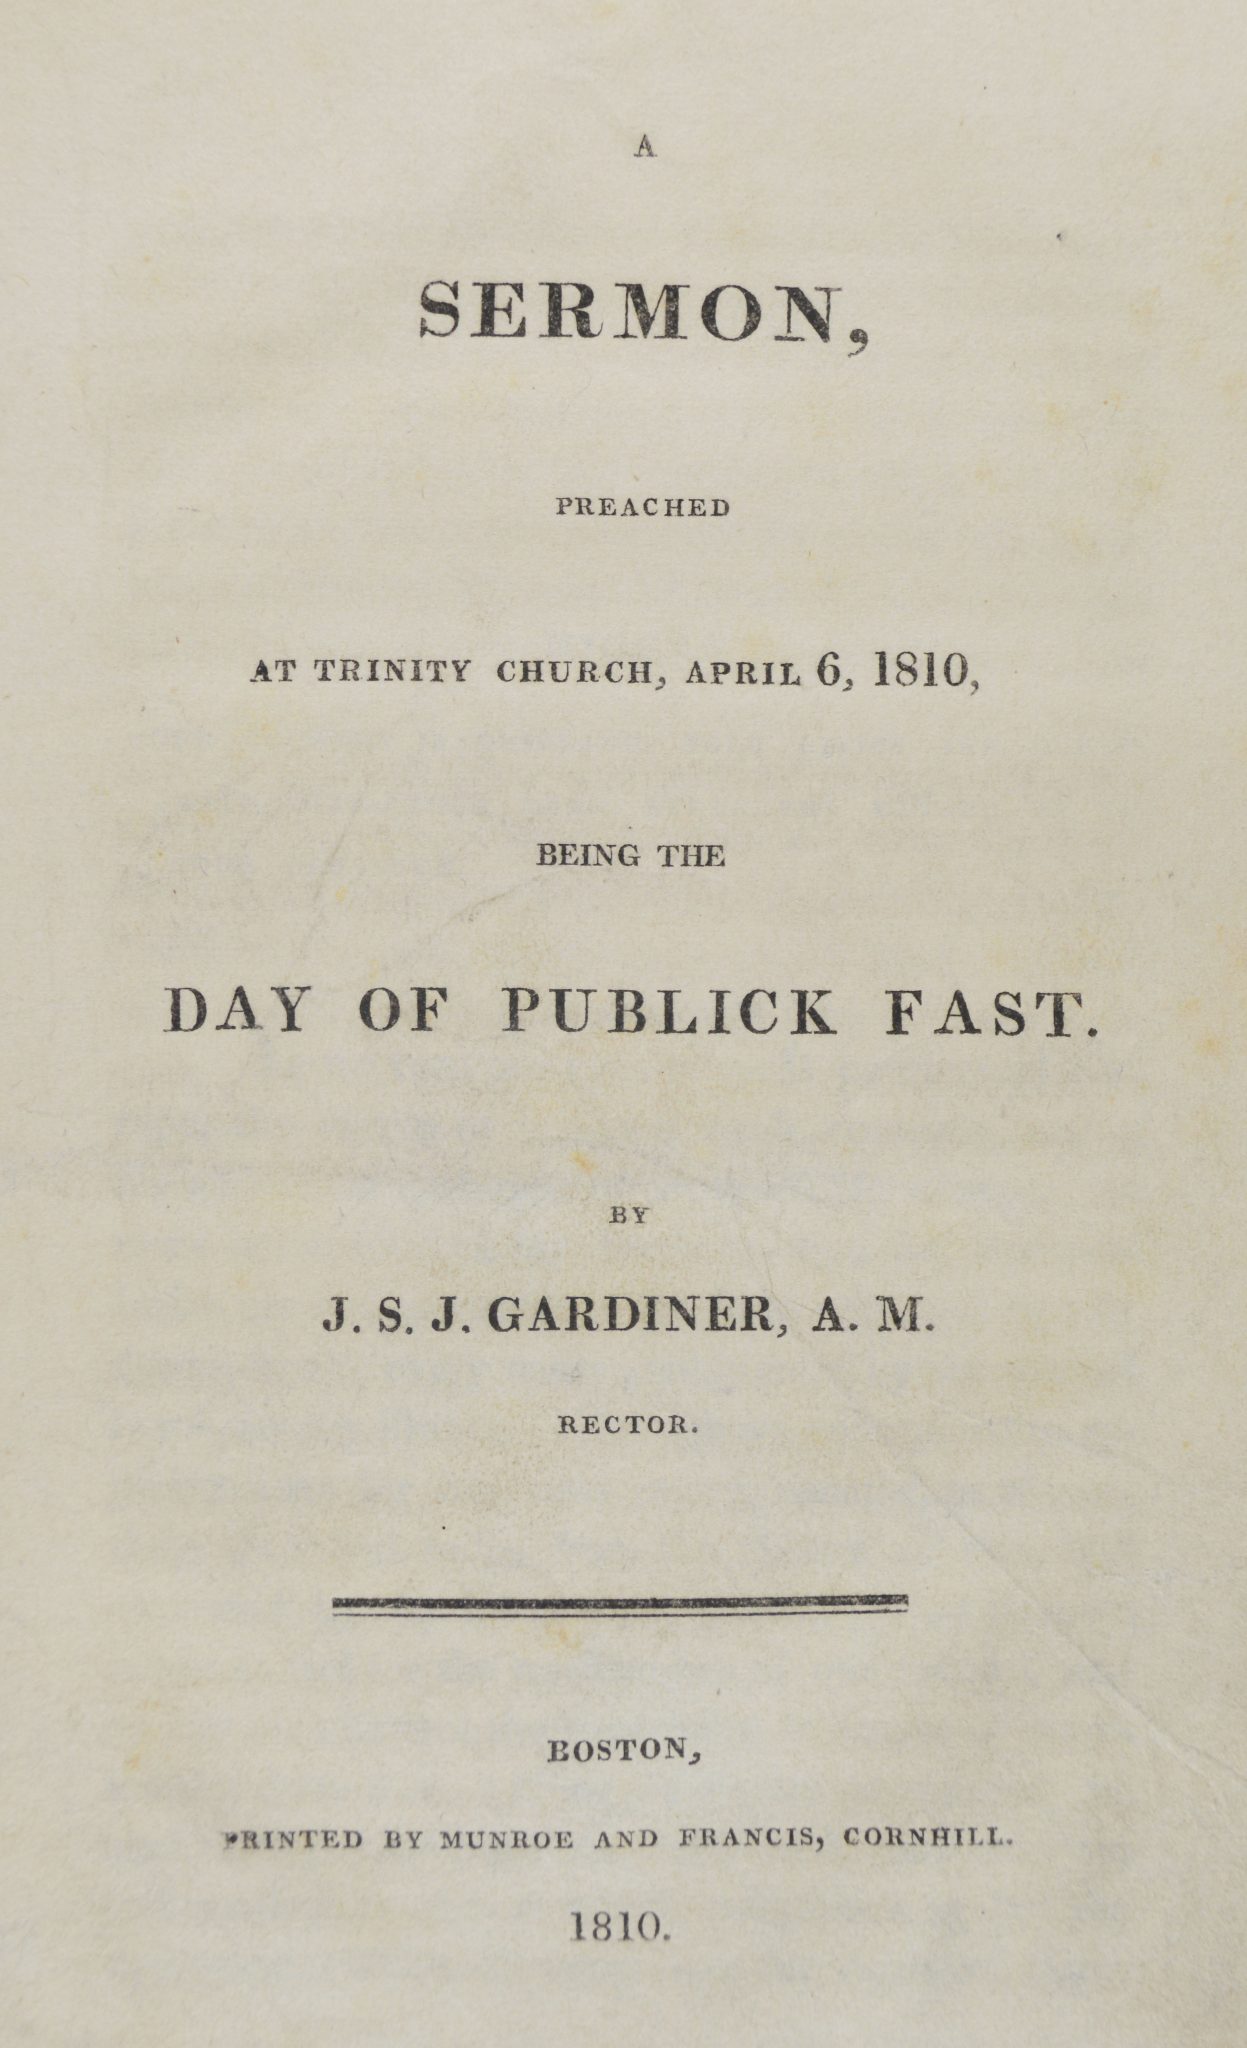 sermon-fasting-1810-massachusetts